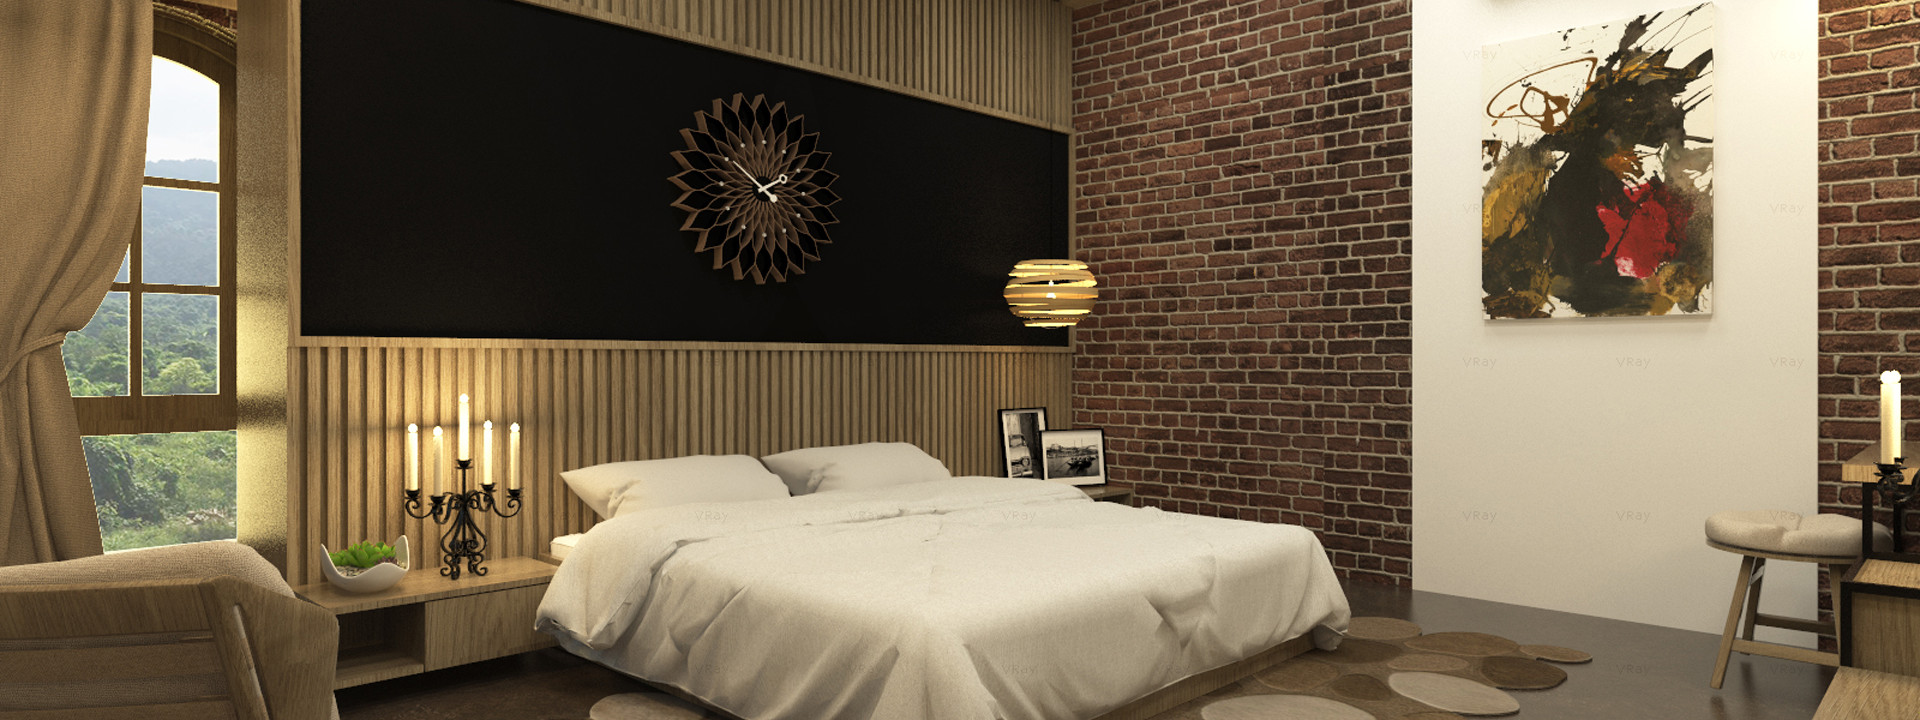 Thiết kế nội thất căn hộ 2 phòng ngủ đem tới sự tiện nghi và thoải mái